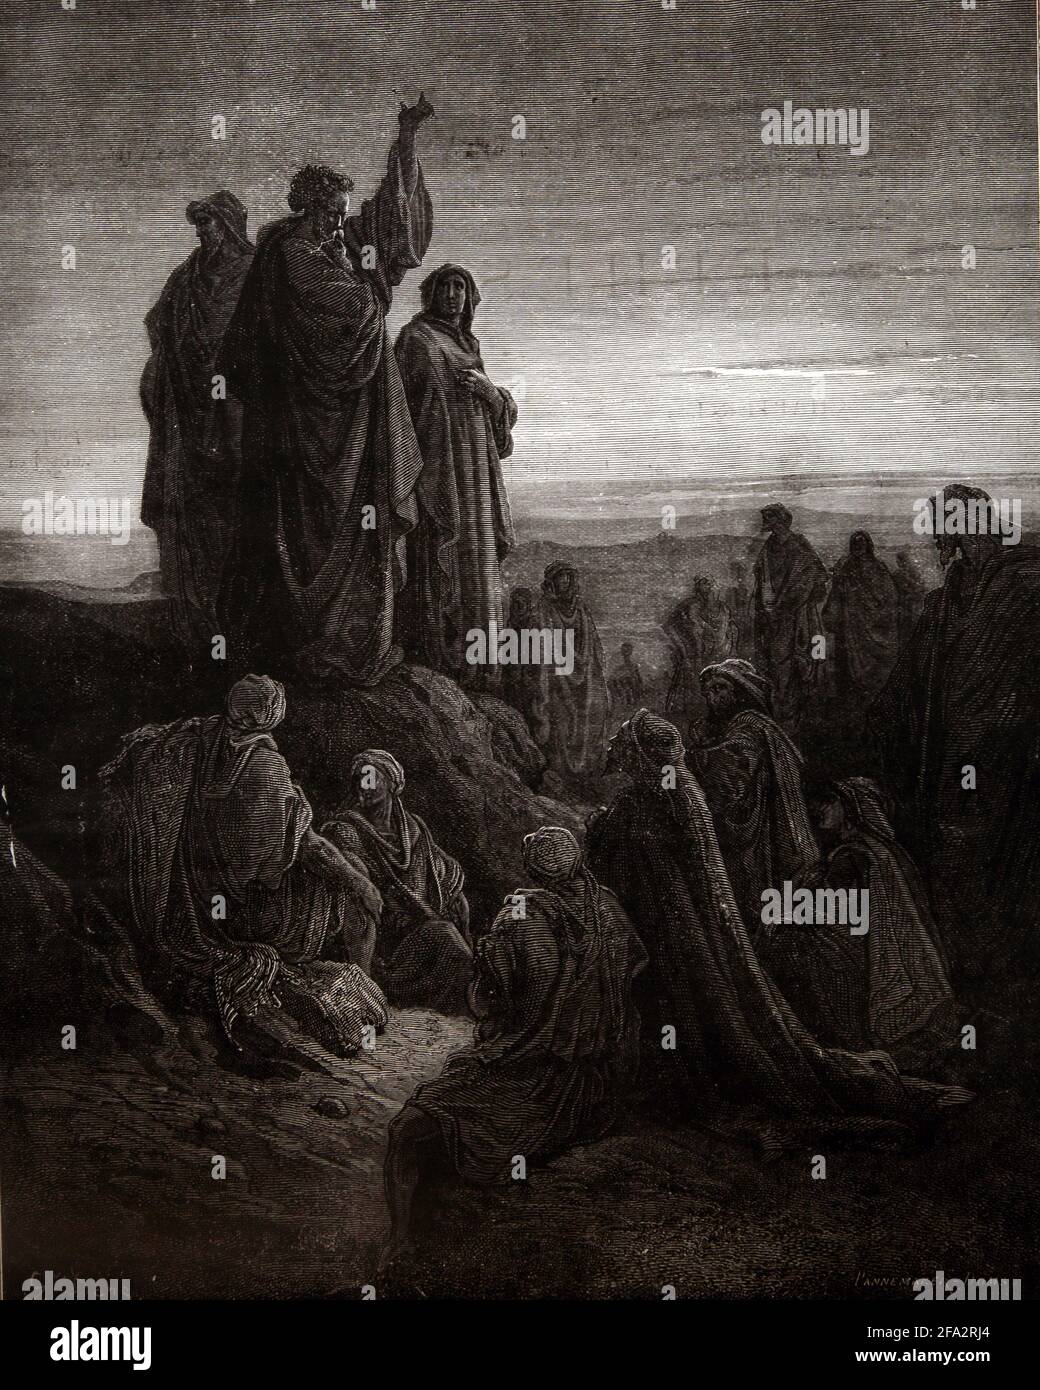 Histoire de la Bible Illustration des Apôtres prêchant l'Evangile (Acts2; 32-33) par Gustave Dore Banque D'Images